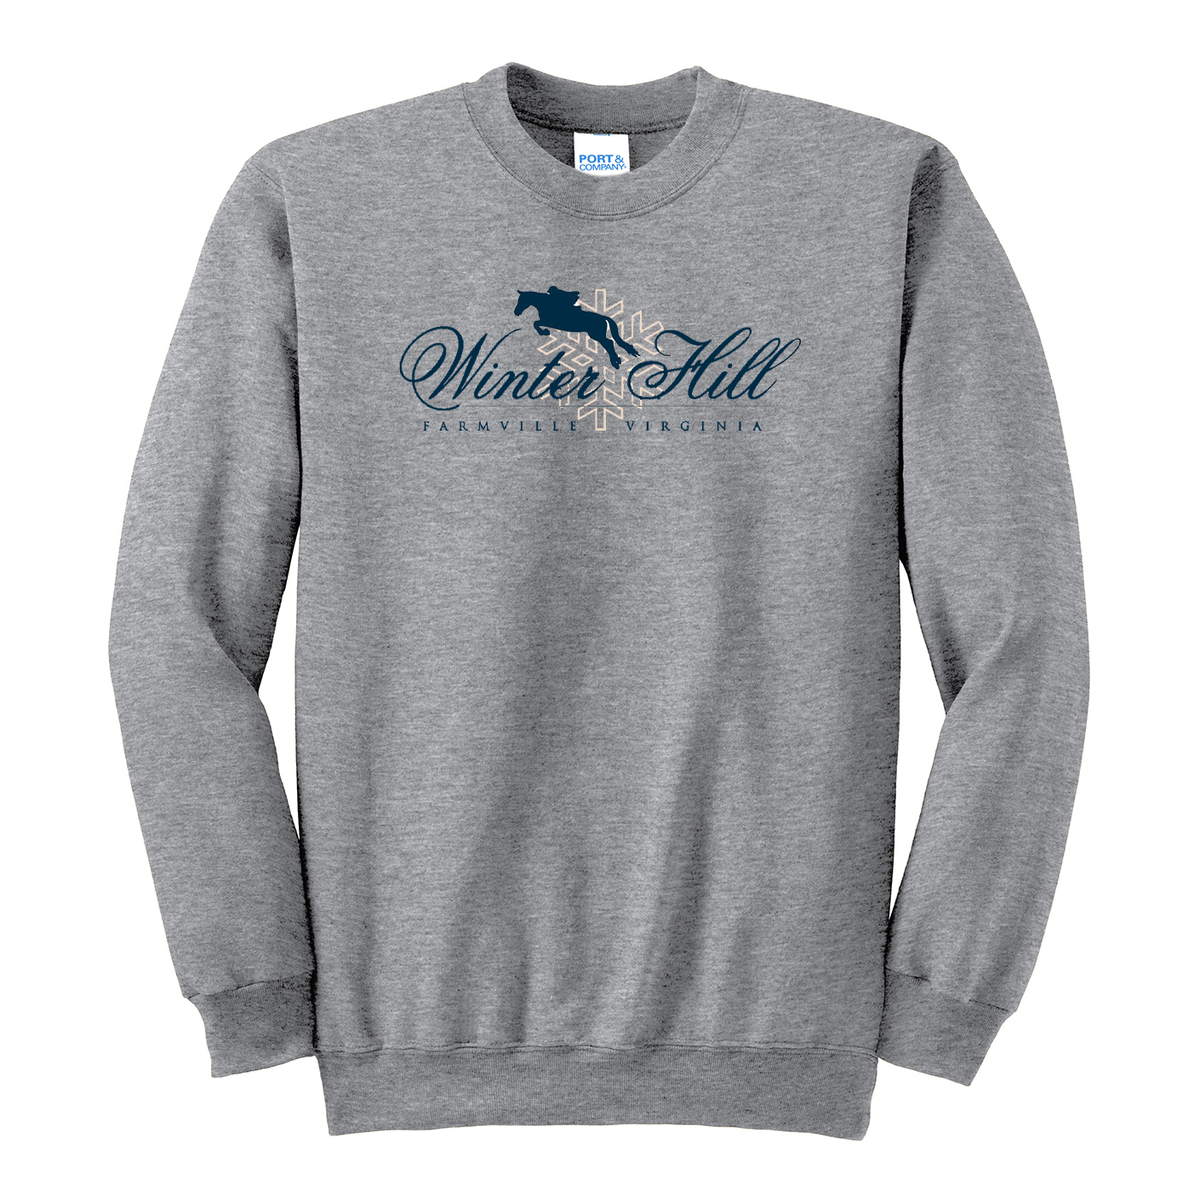 Winterhill Farm Crew Neck Sweater